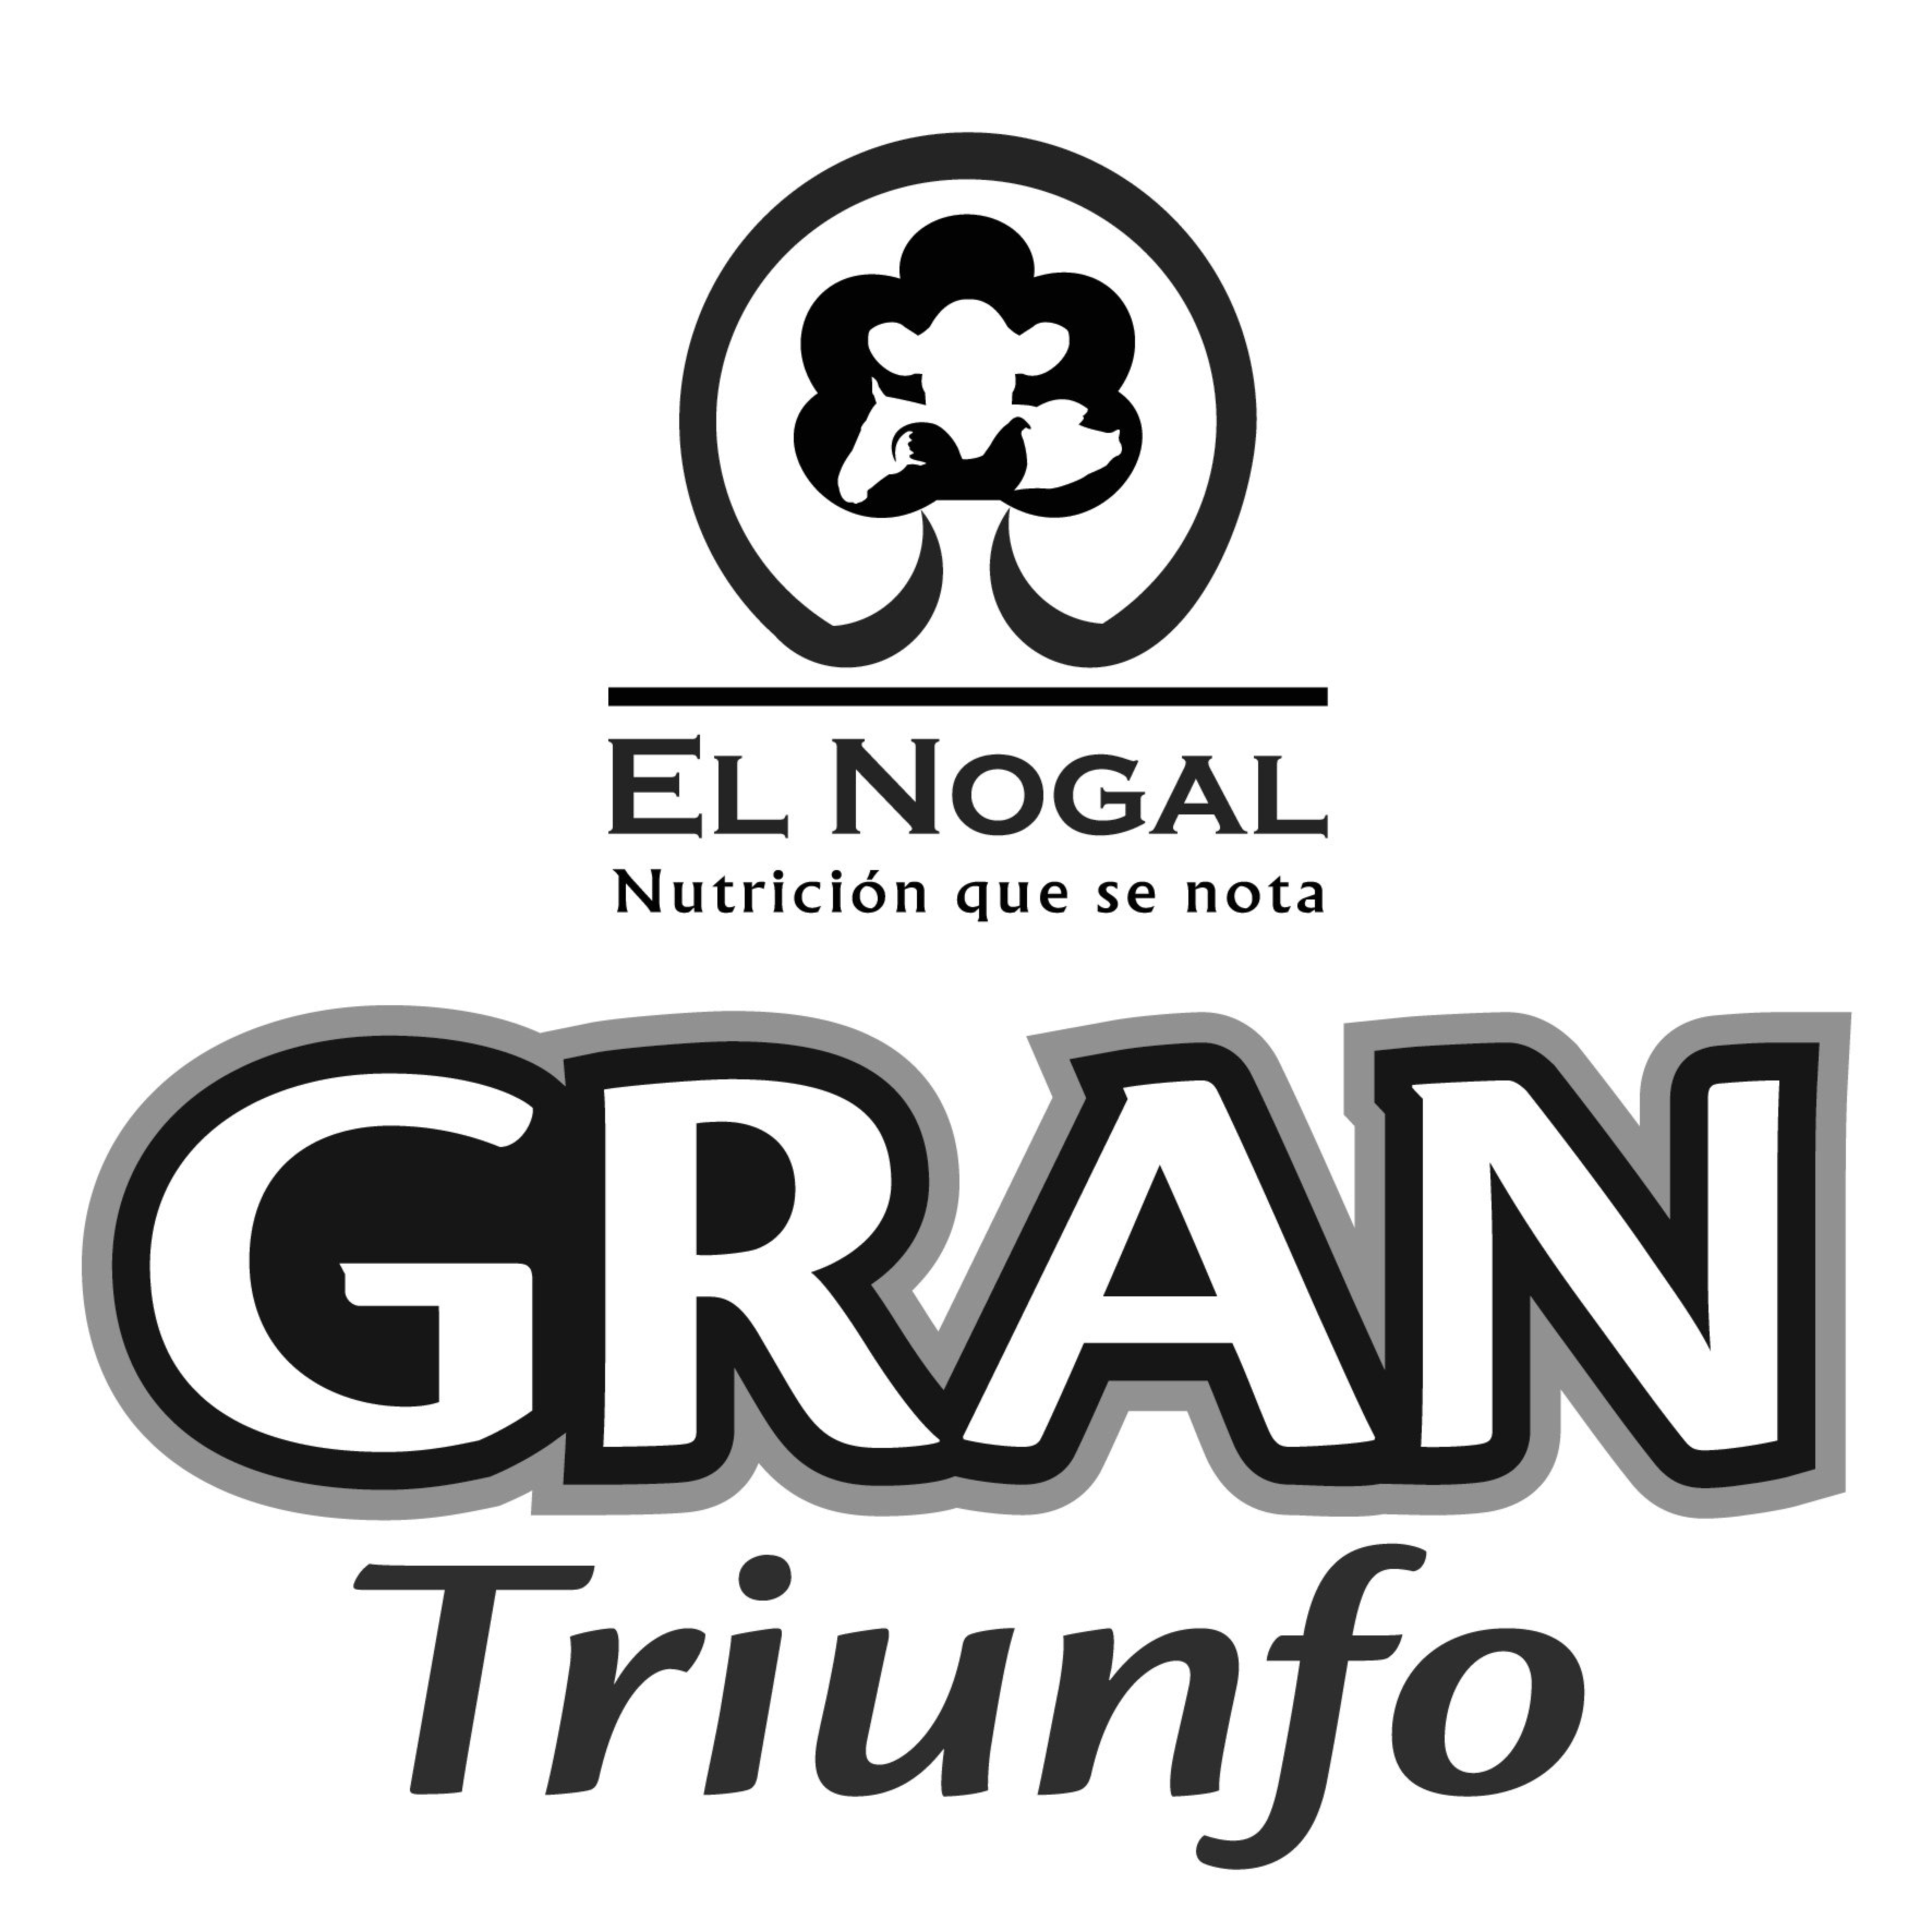 EL NOGAL NUTRICION QUE SE NOTA GRAN TRIUNFO - Ornelas-cortes, Antonio  Trademark Registration